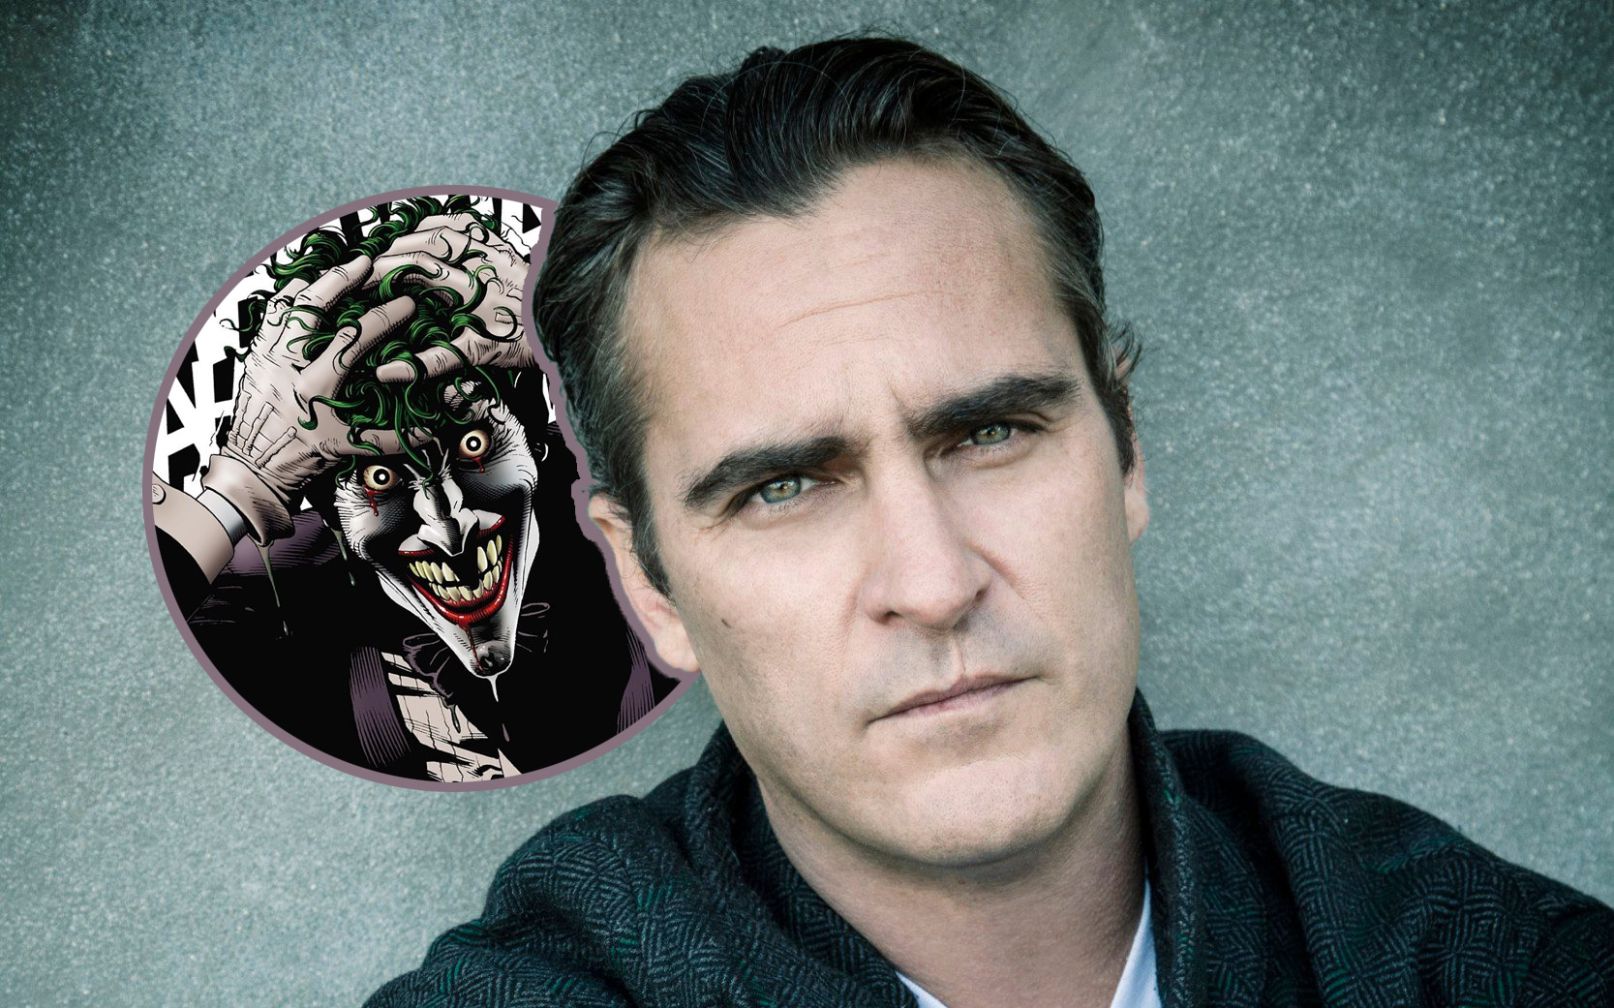 Confirmado: Así será la aterradora nueva película del Joker con Joaquin Phoenix